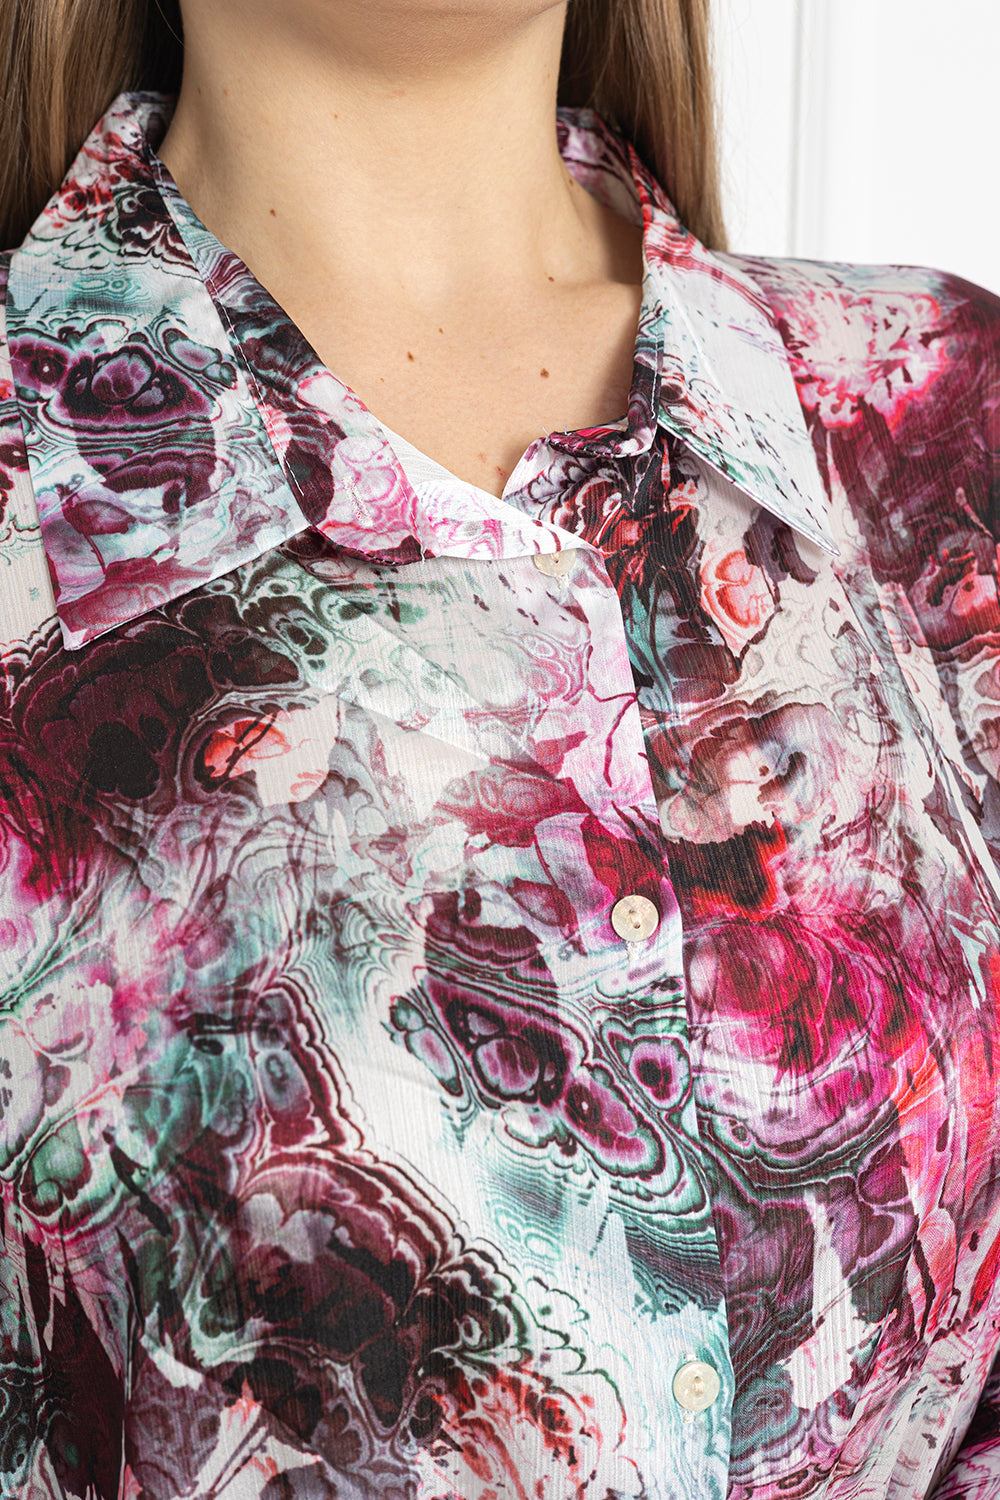 Γυναικείο πουκάμισο πολυτέλειας σε μεγάλα μεγέθη - Abstract Μωβ